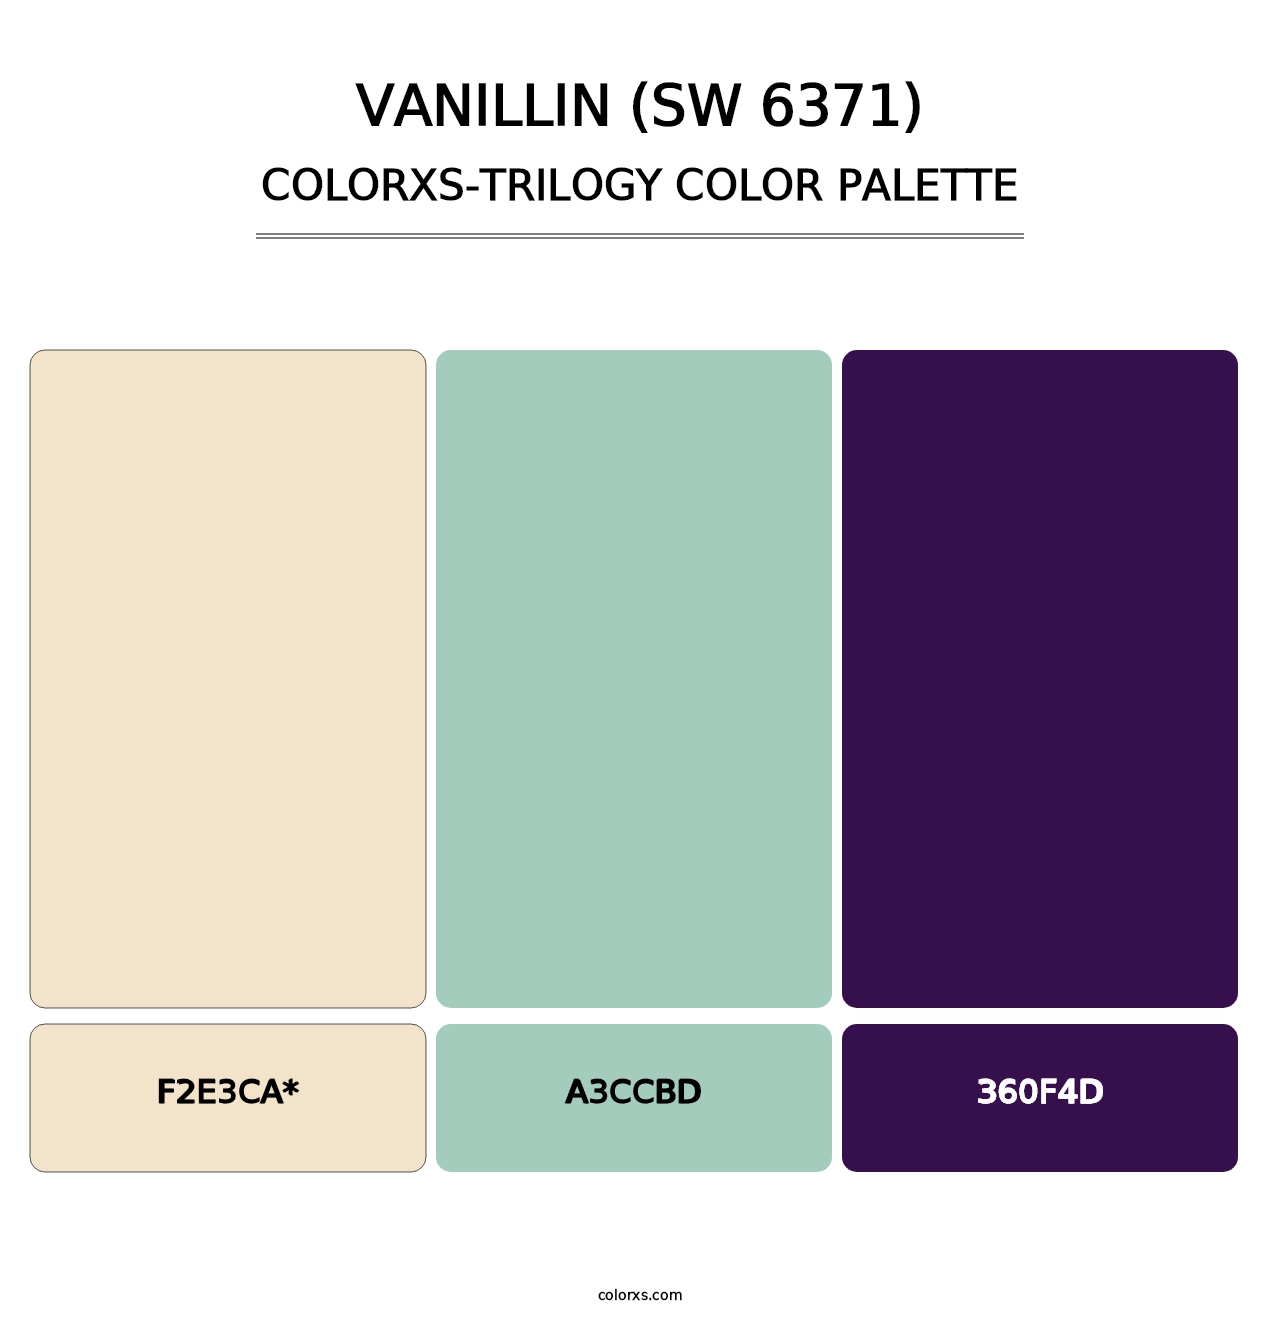 Vanillin (SW 6371) - Colorxs Trilogy Palette